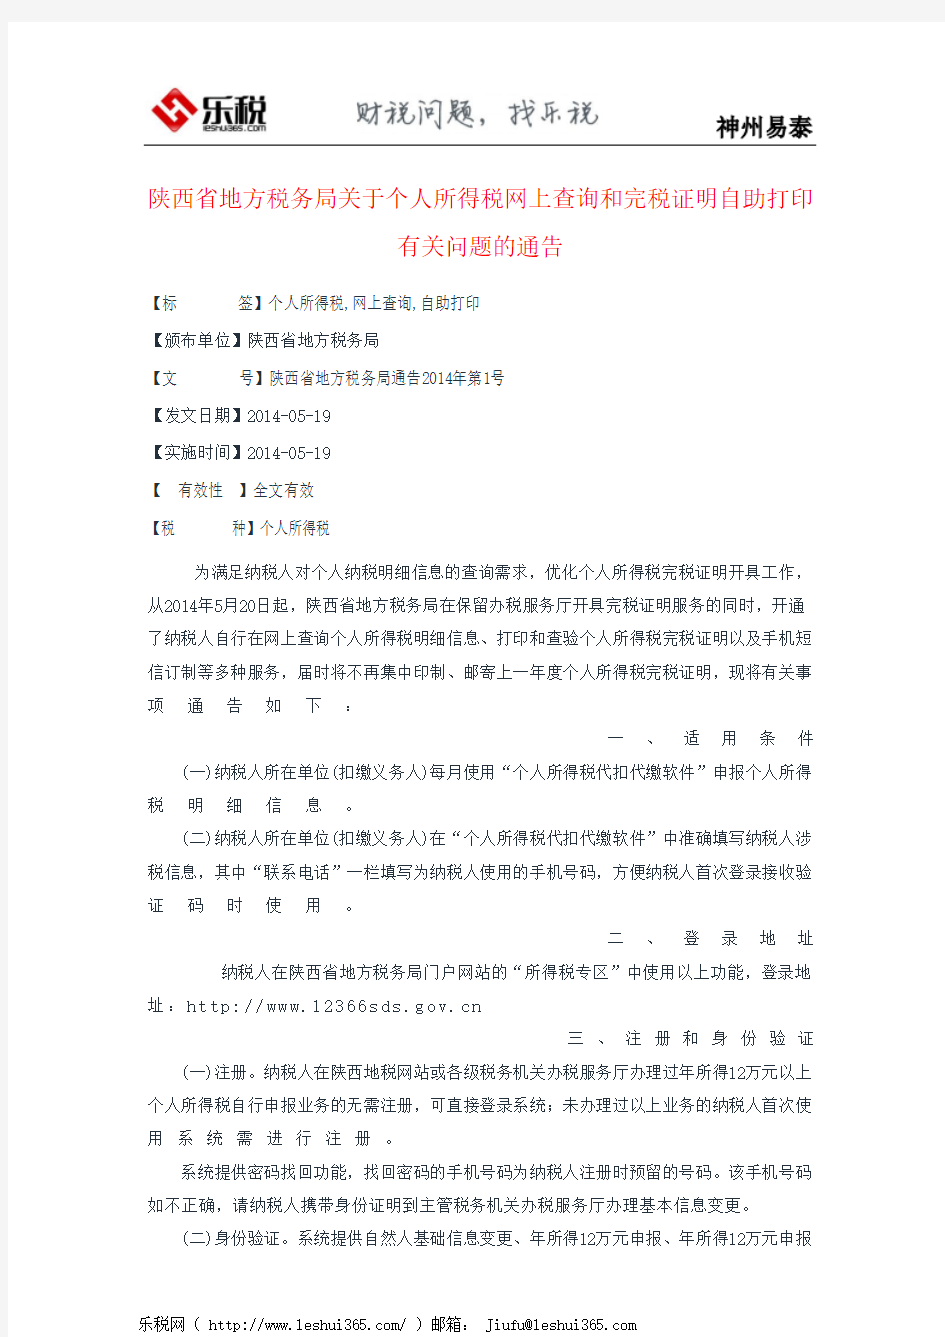 陕西省地方税务局关于个人所得税网上查询和完税证明自助打印有关